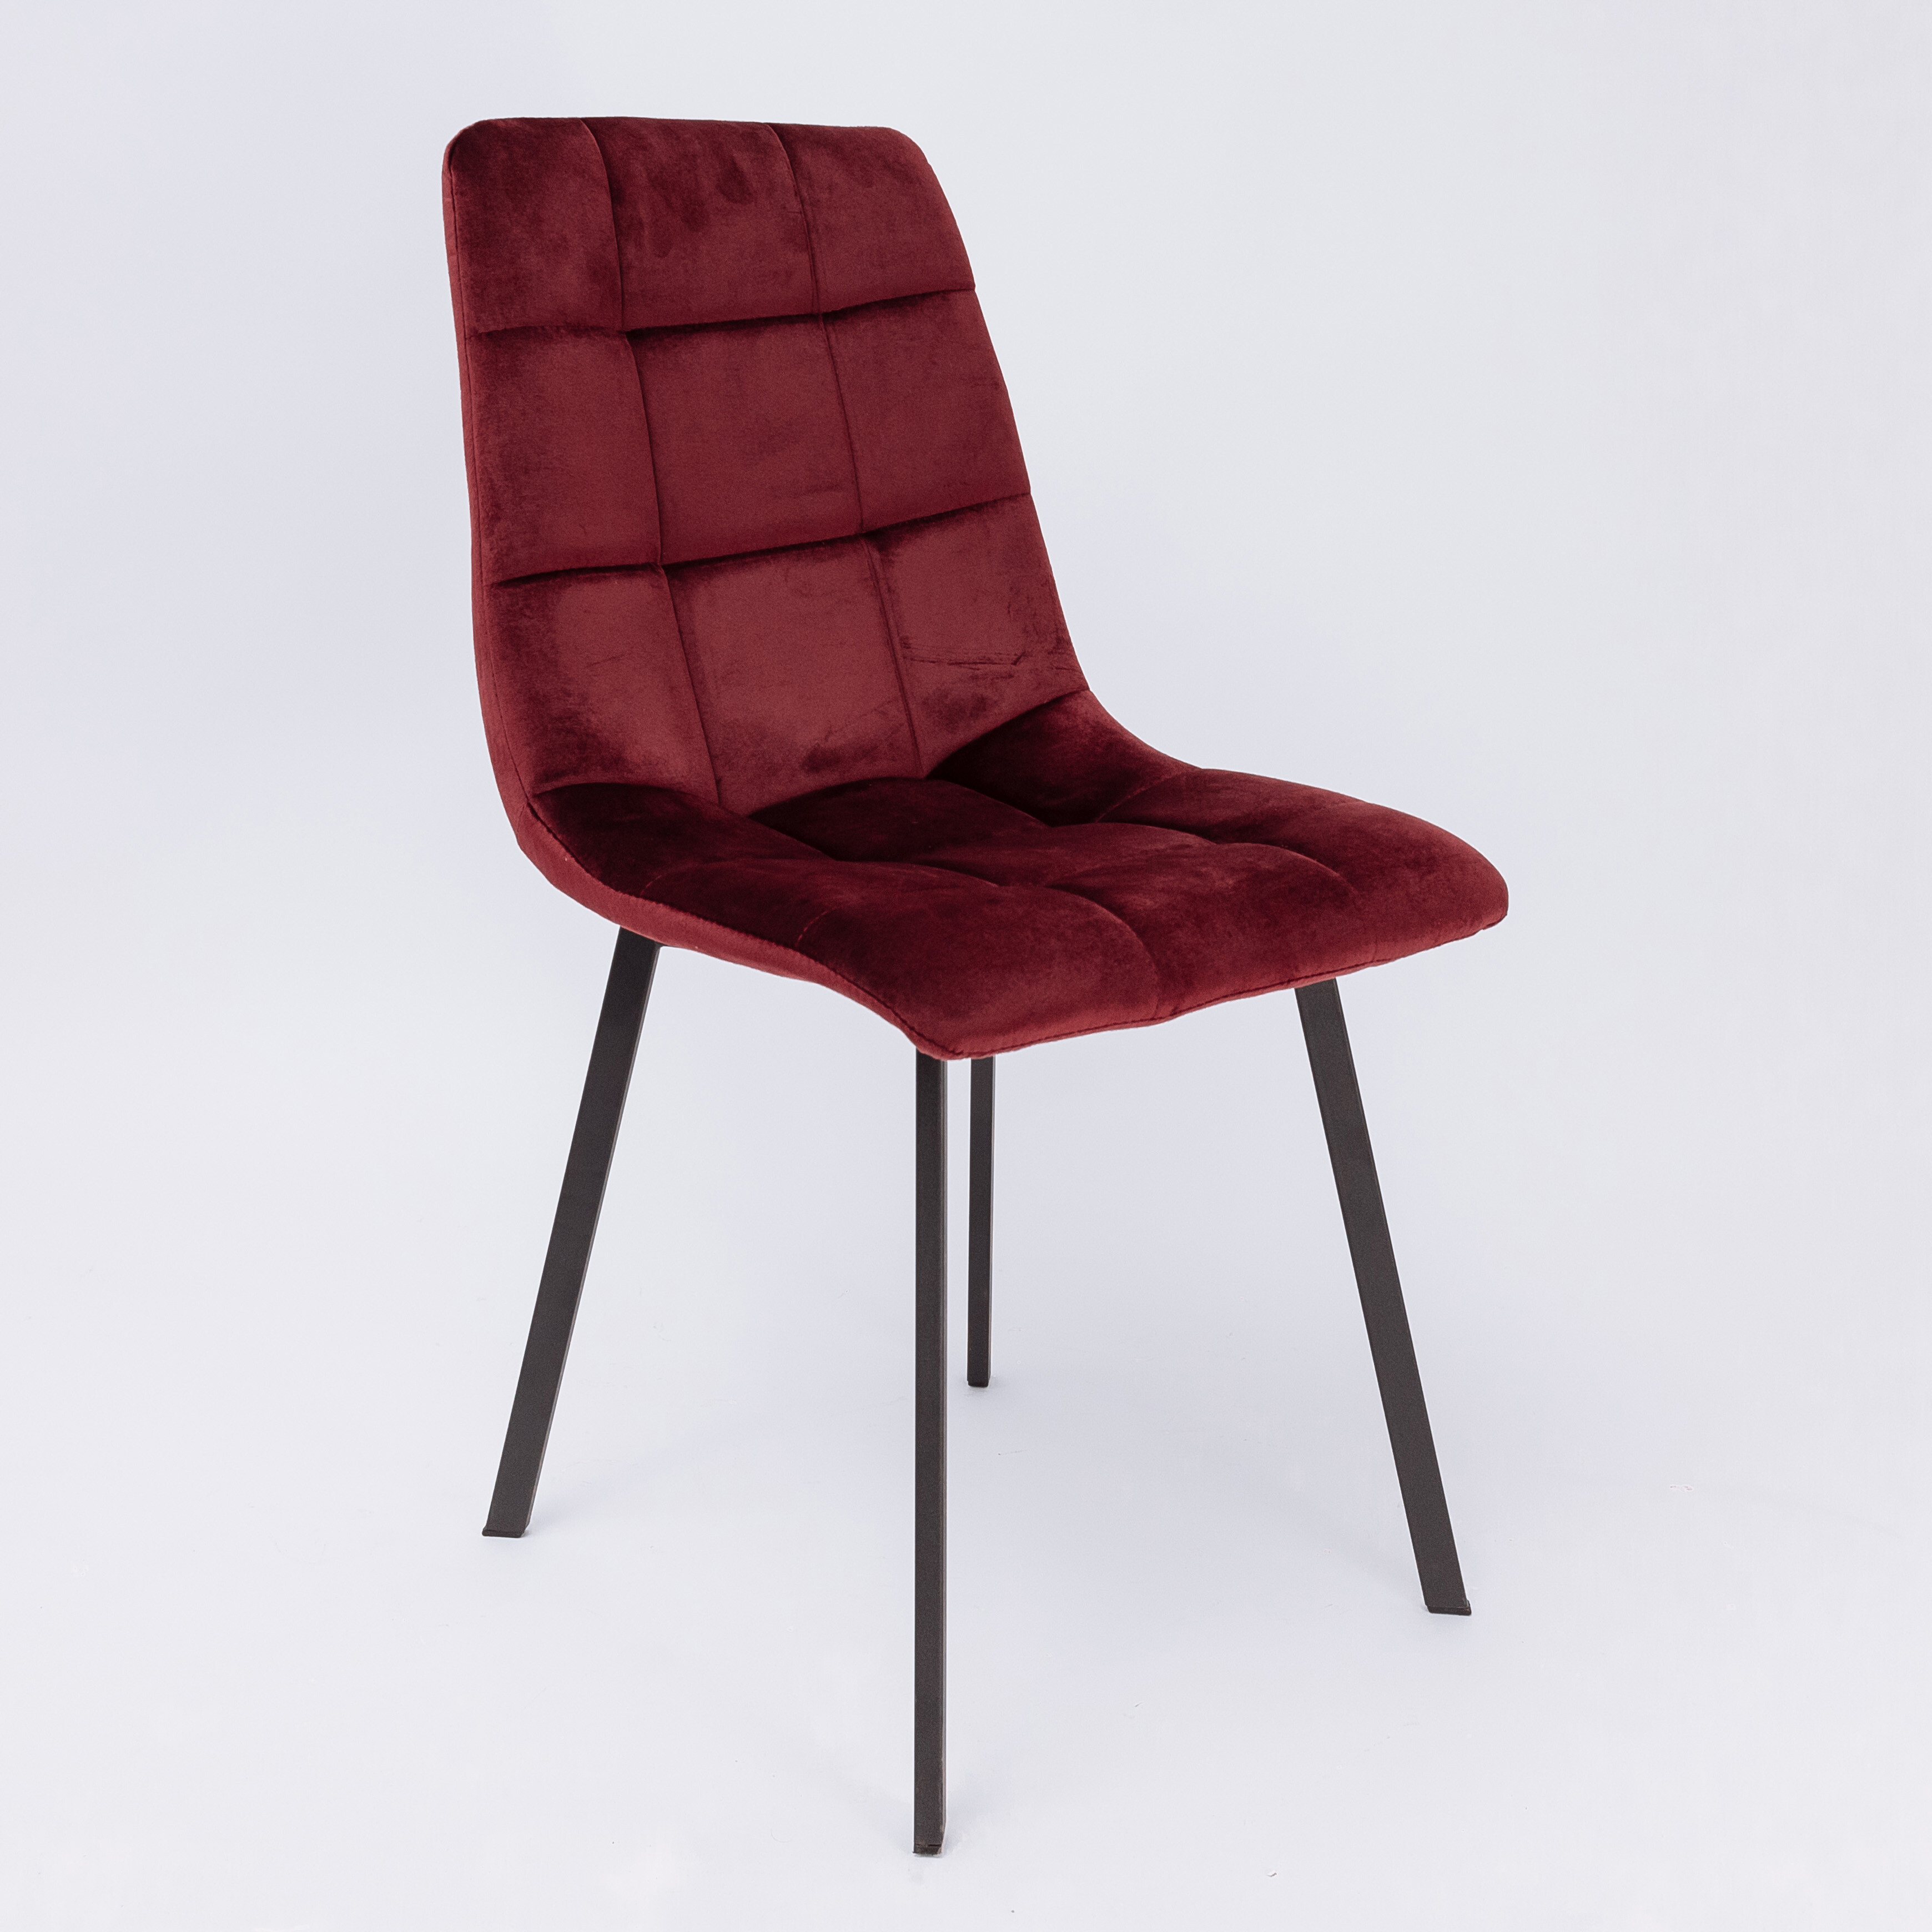 Обеденный стул мягкий темно-бордовый VERMON